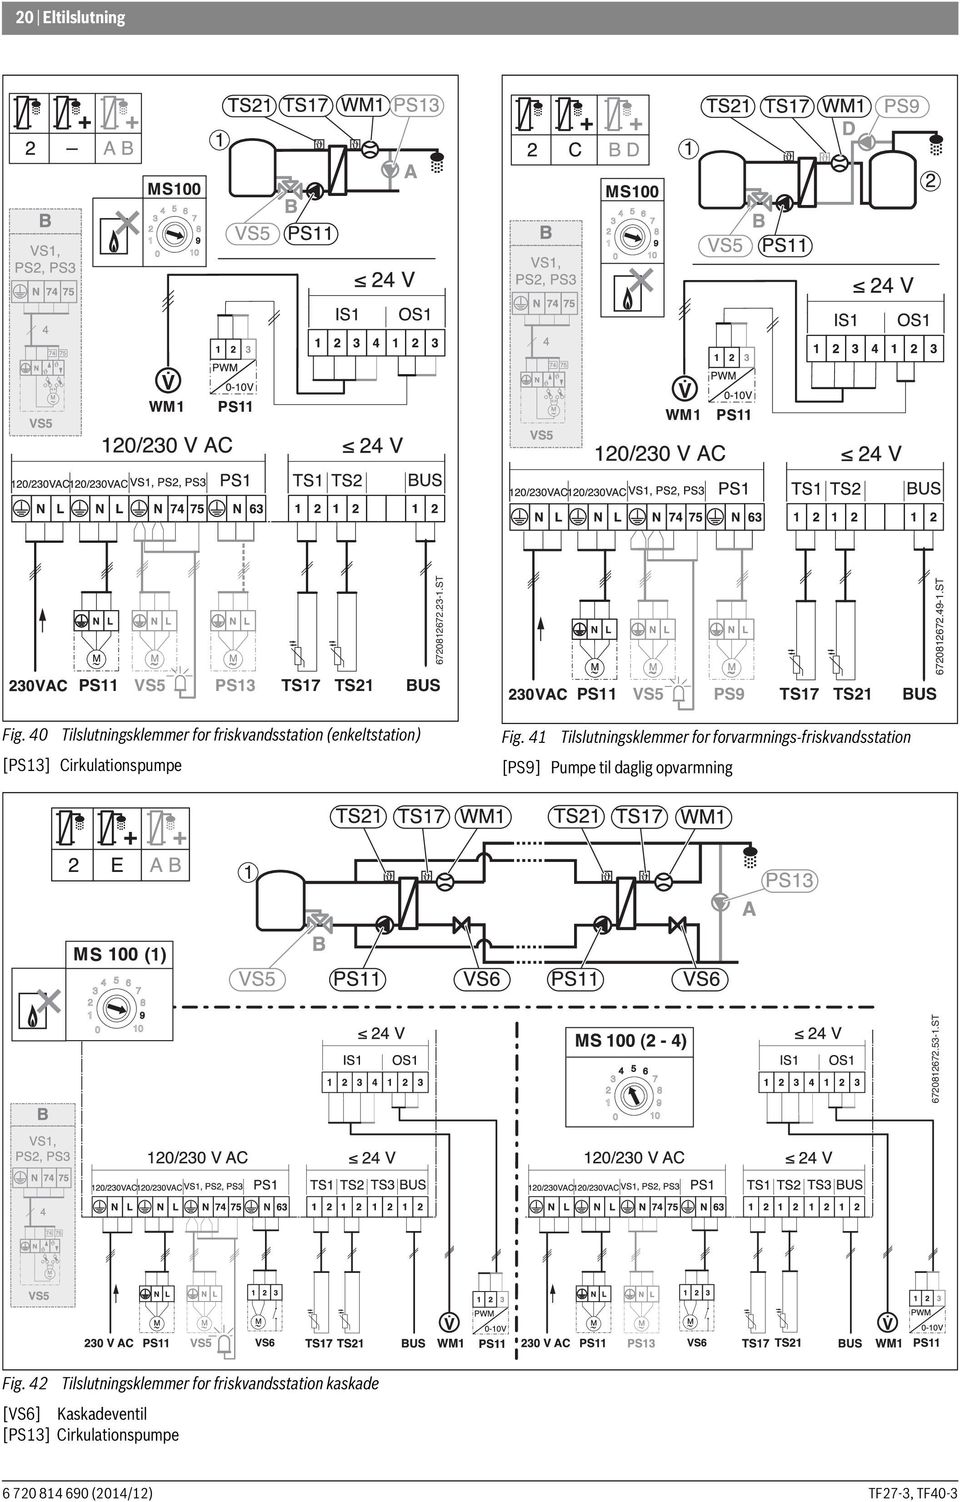 41 Tilslutningsklemmer for forvarmnings-friskvandsstation [PS9] Pumpe til daglig opvarmning 1 (1)